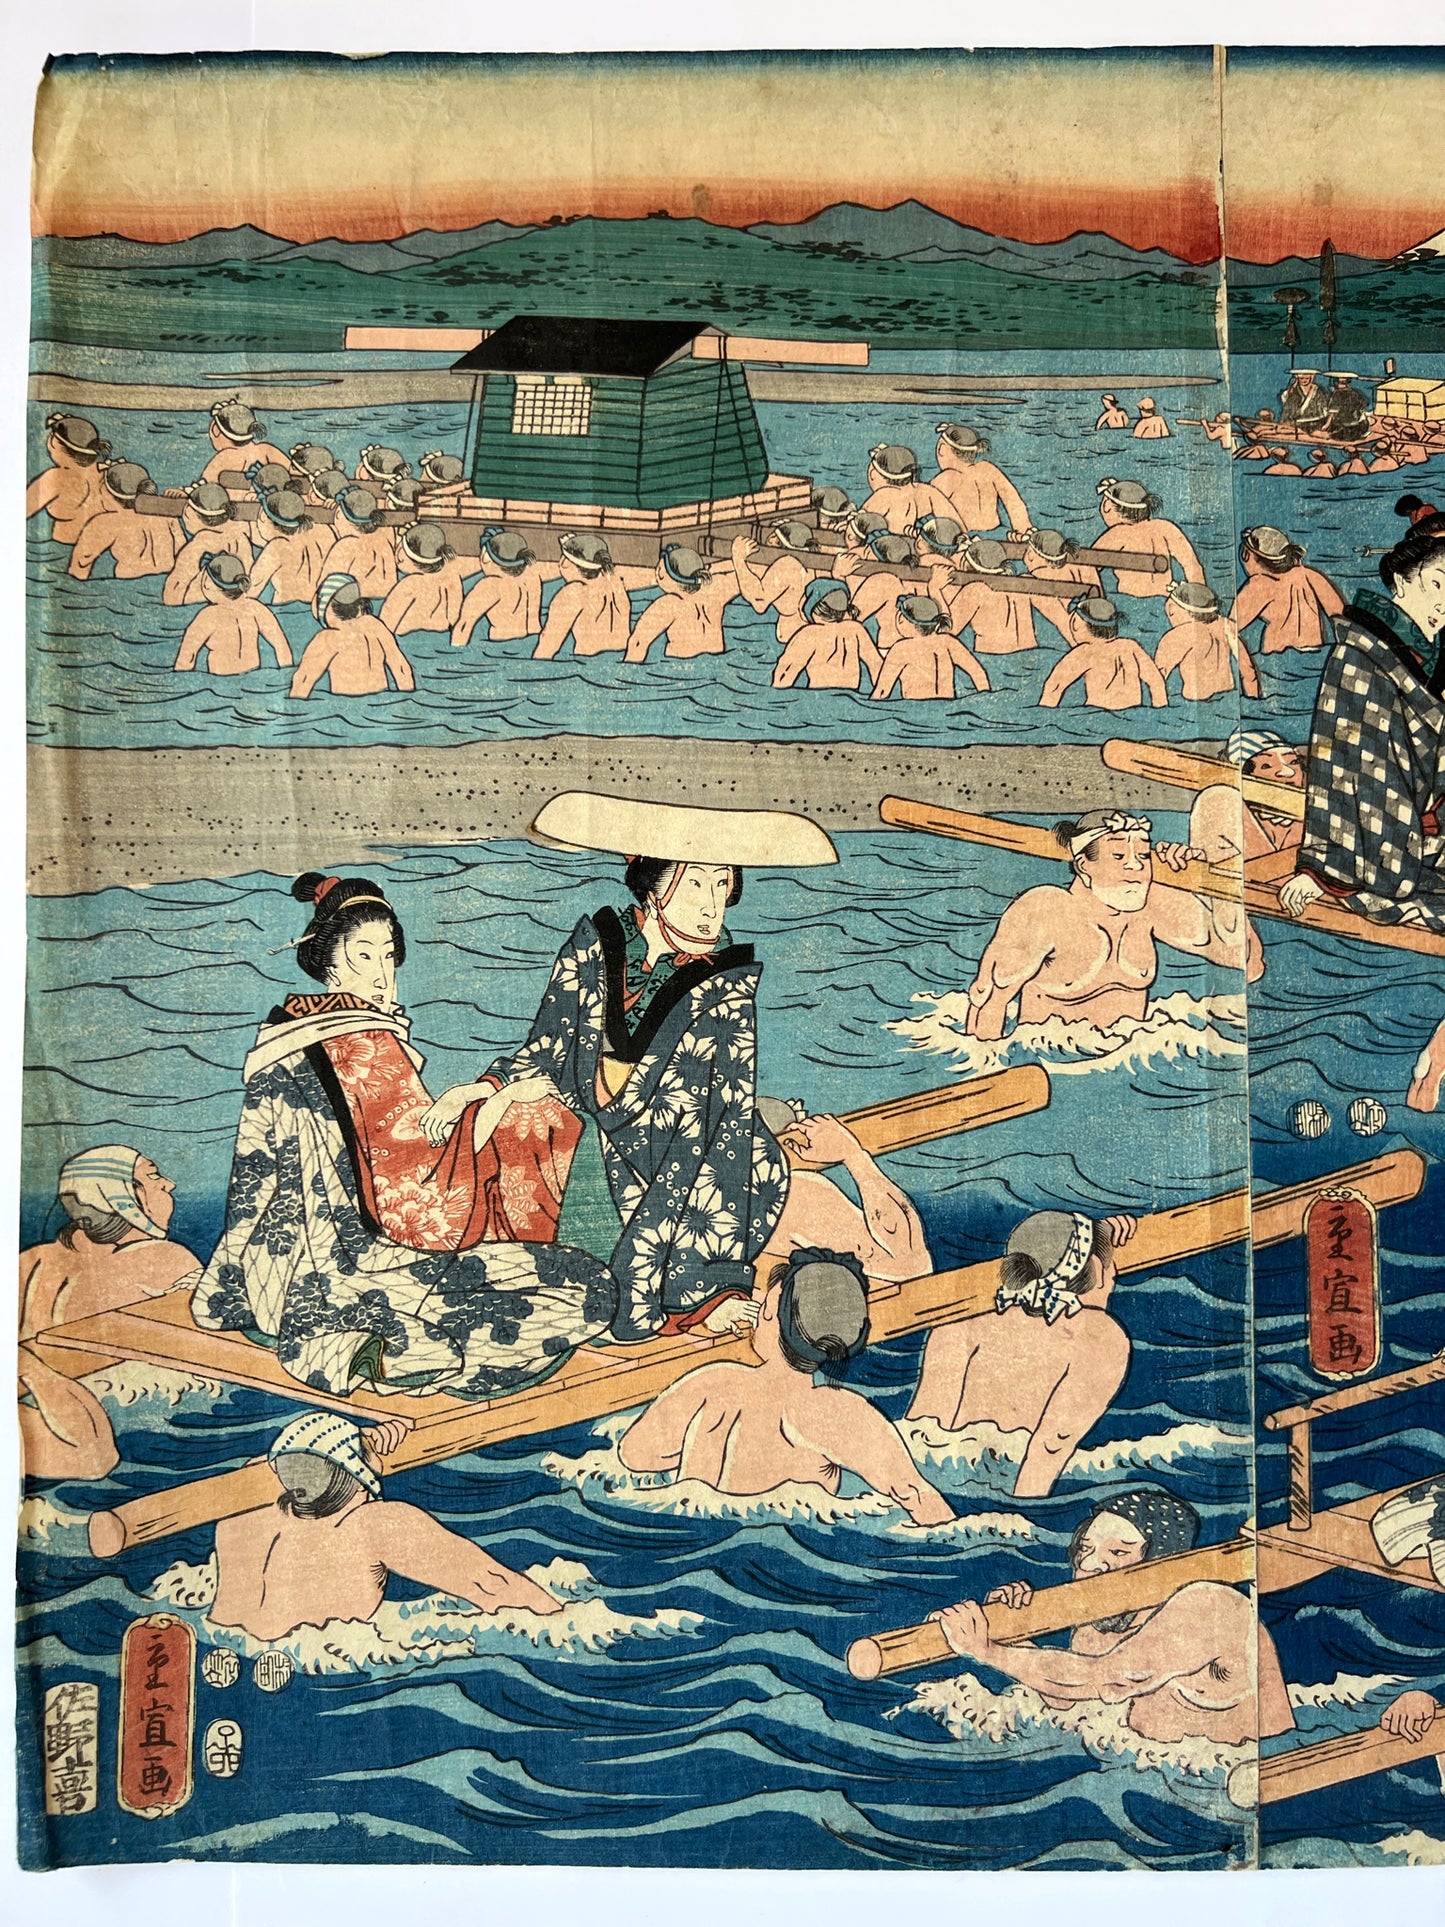 estampe japonaise traversée de rivière par femmes en kimono et leurs porteurs, palanquin et plateforme en bois